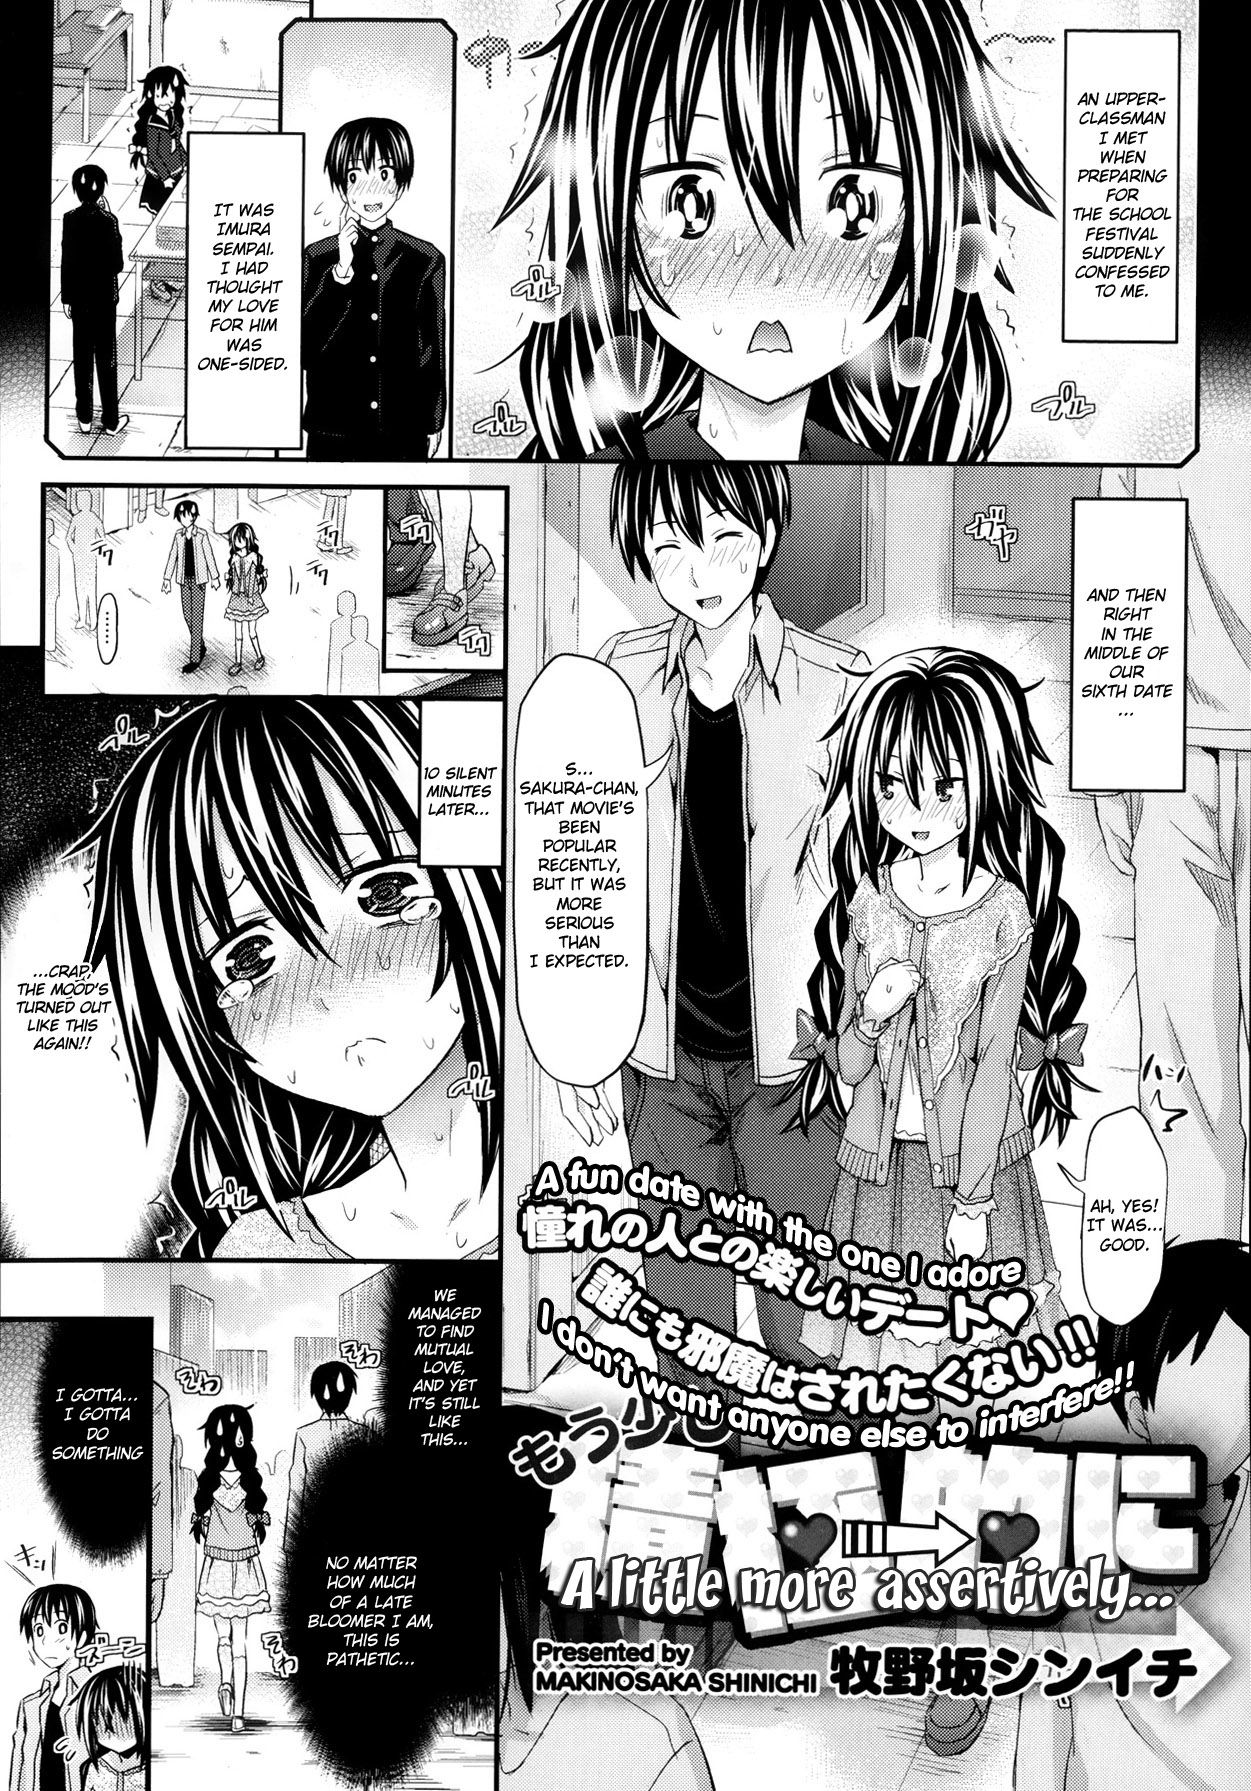 [Makinosaka Shinichi] A Little More Assertively [English] (/a/nonymous) page 1 full